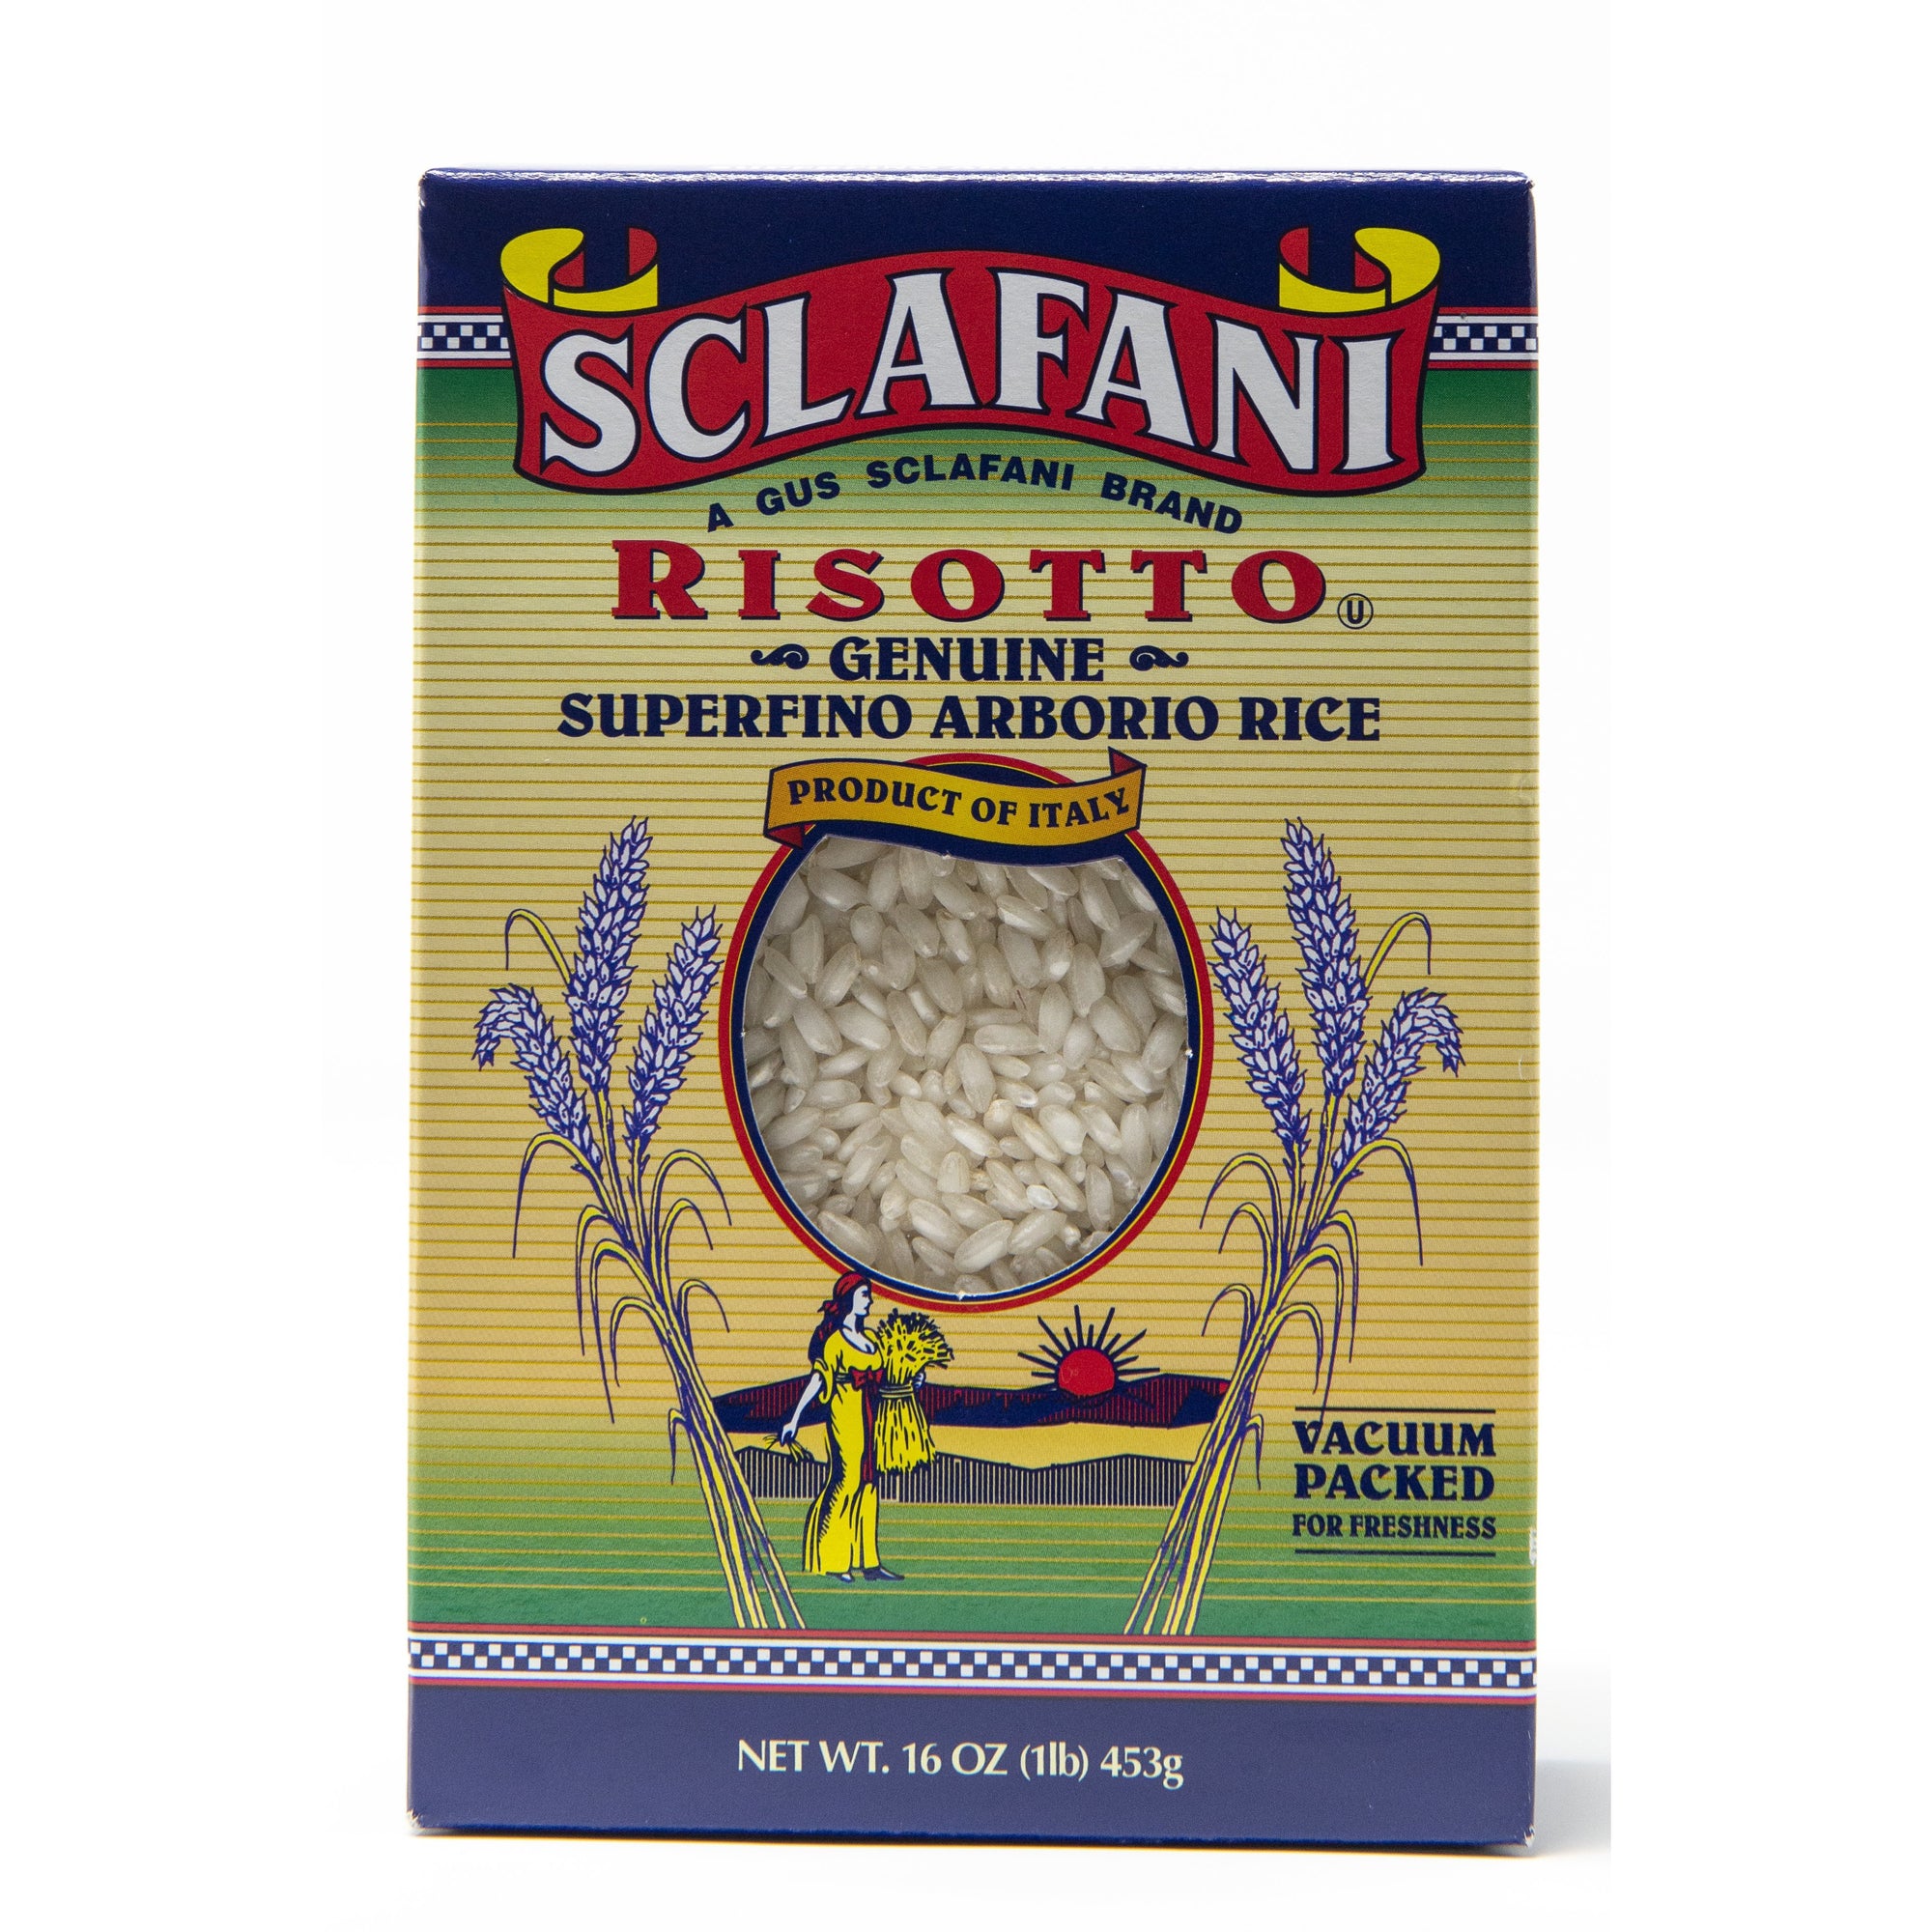 Sclafani Italian Arborio Rice (Risotto) 1 Lb.